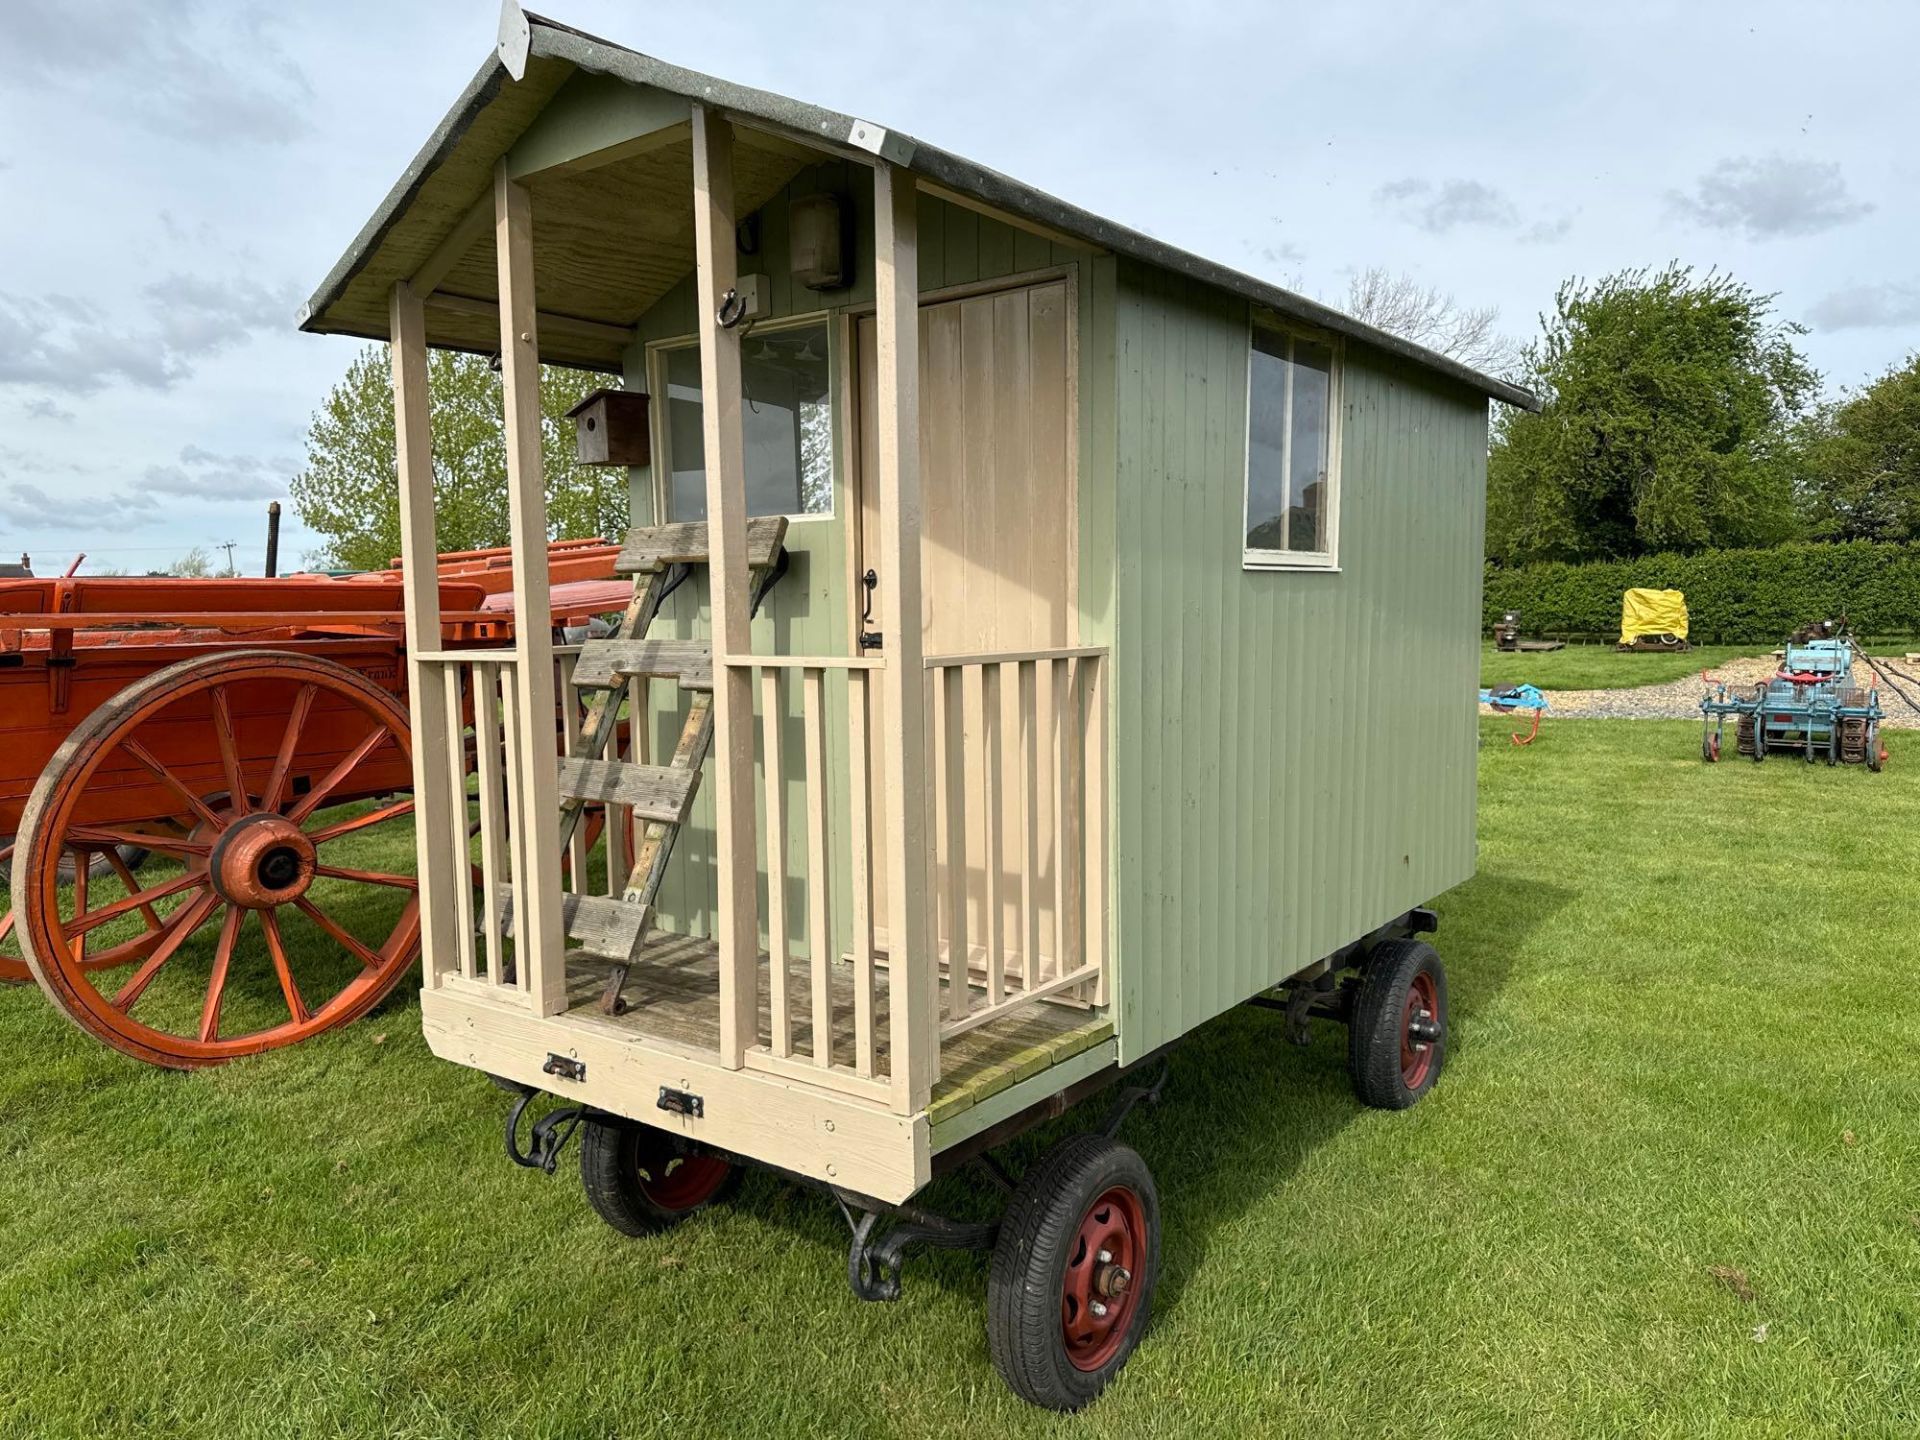 Shephards/garden wooden hut 10' x 4'6" on 4 wheel trailer - Image 3 of 3